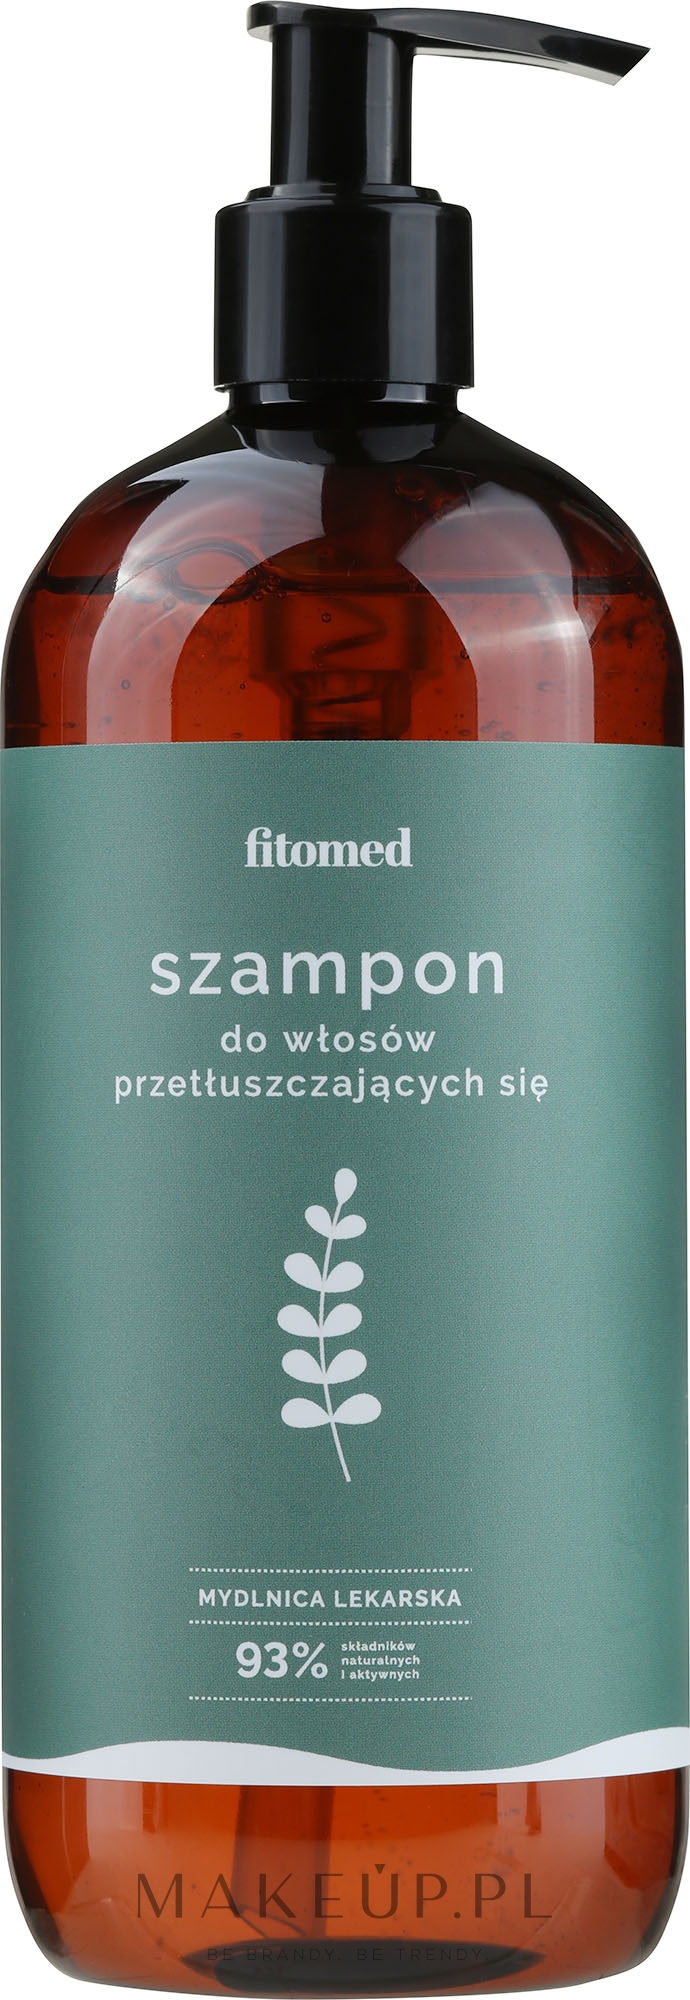 szampon ziołowy do włosów ciemnych firmy fitomed